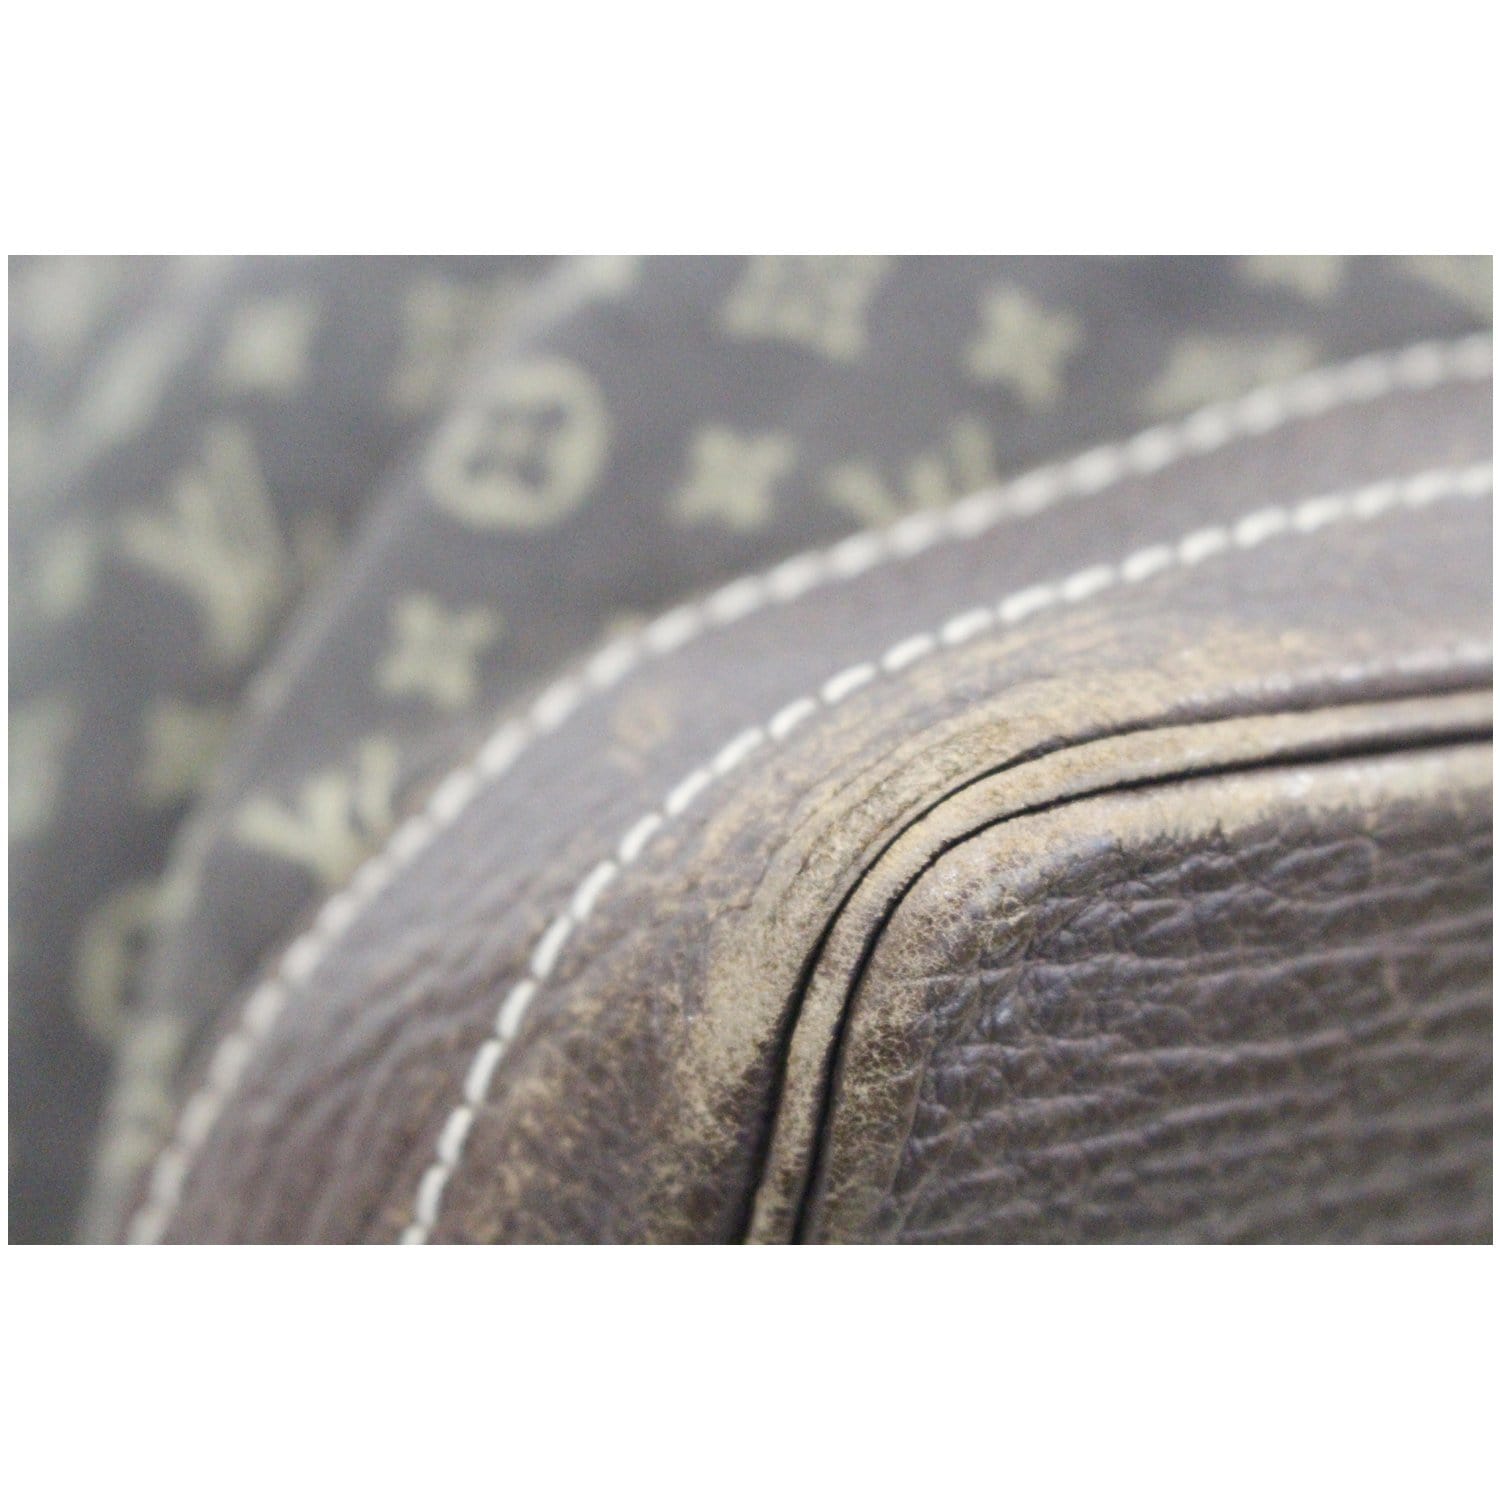 Louis-Vuitton-Monogram-Mini-Noe-Japan-Limited-Edition-M99162 – dct